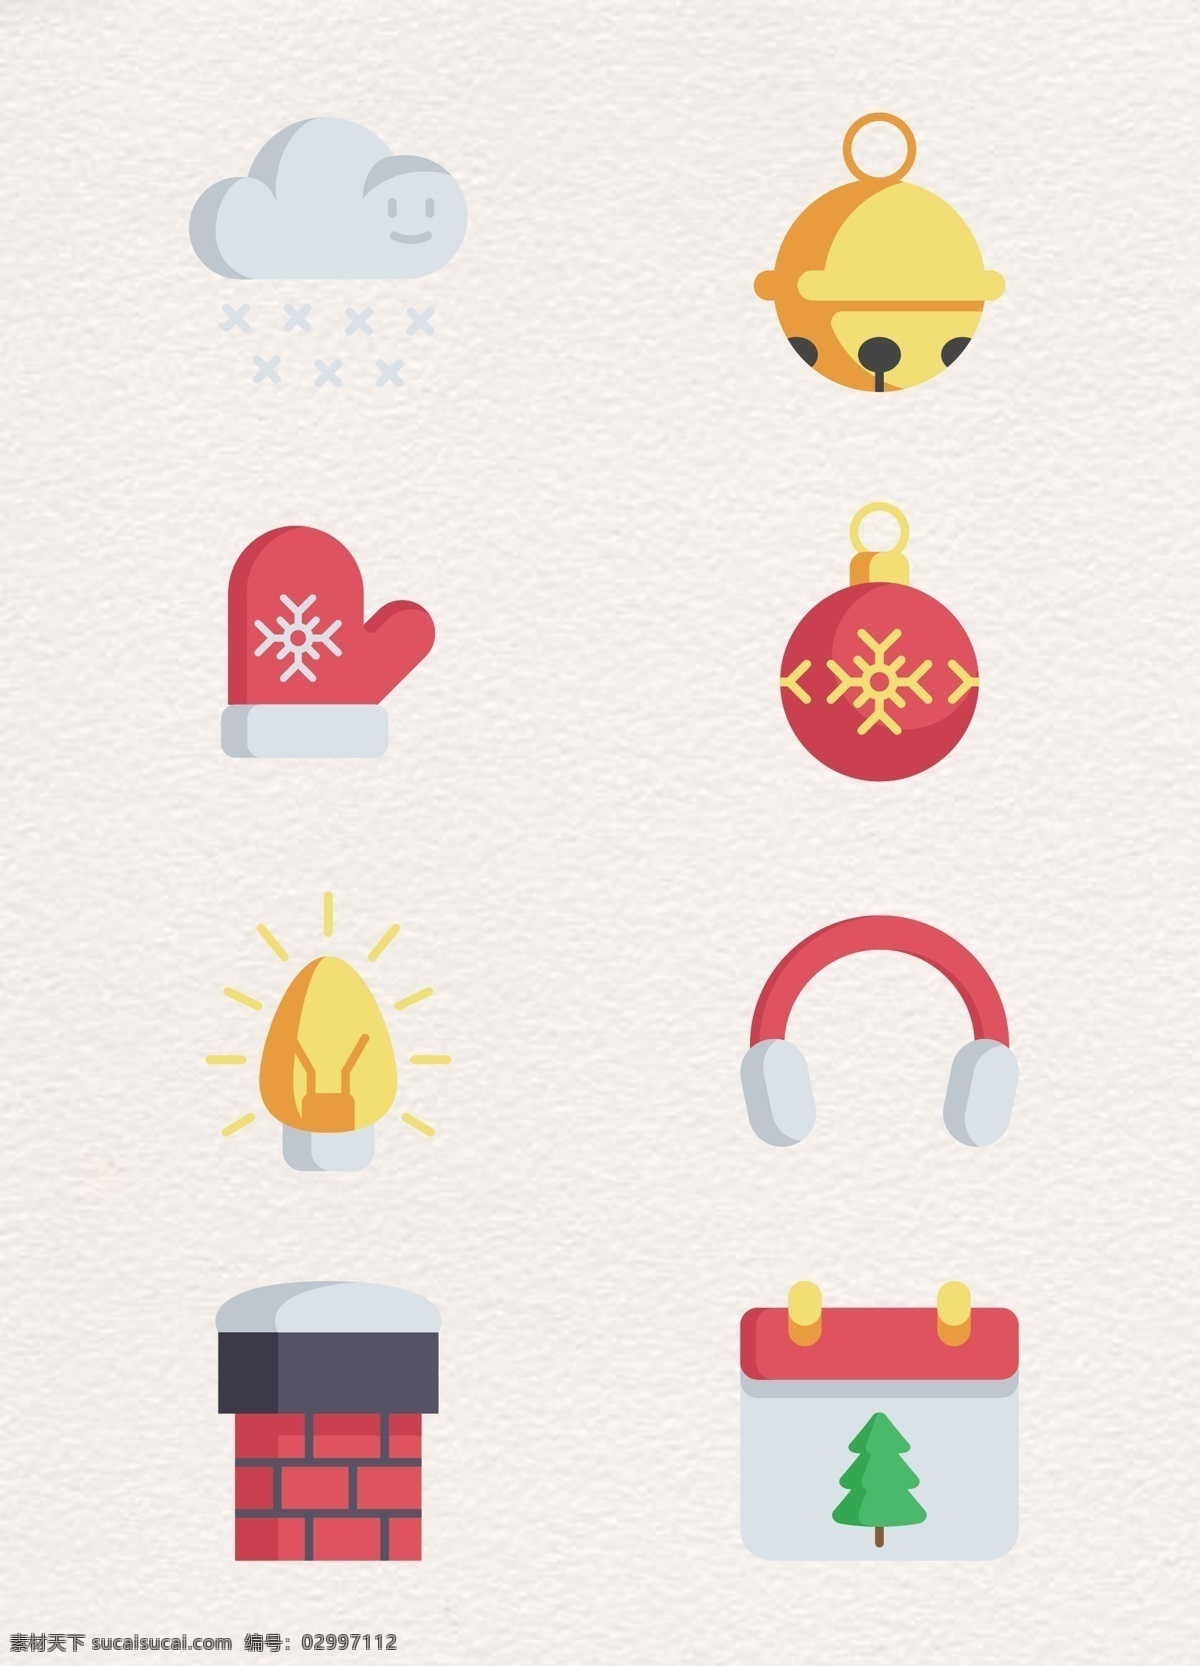 卡通 创意 圣诞节 矢量图 手套 日历 圣诞节元素 下雪天 铃铛 吊球 彩灯 耳罩 烟囱